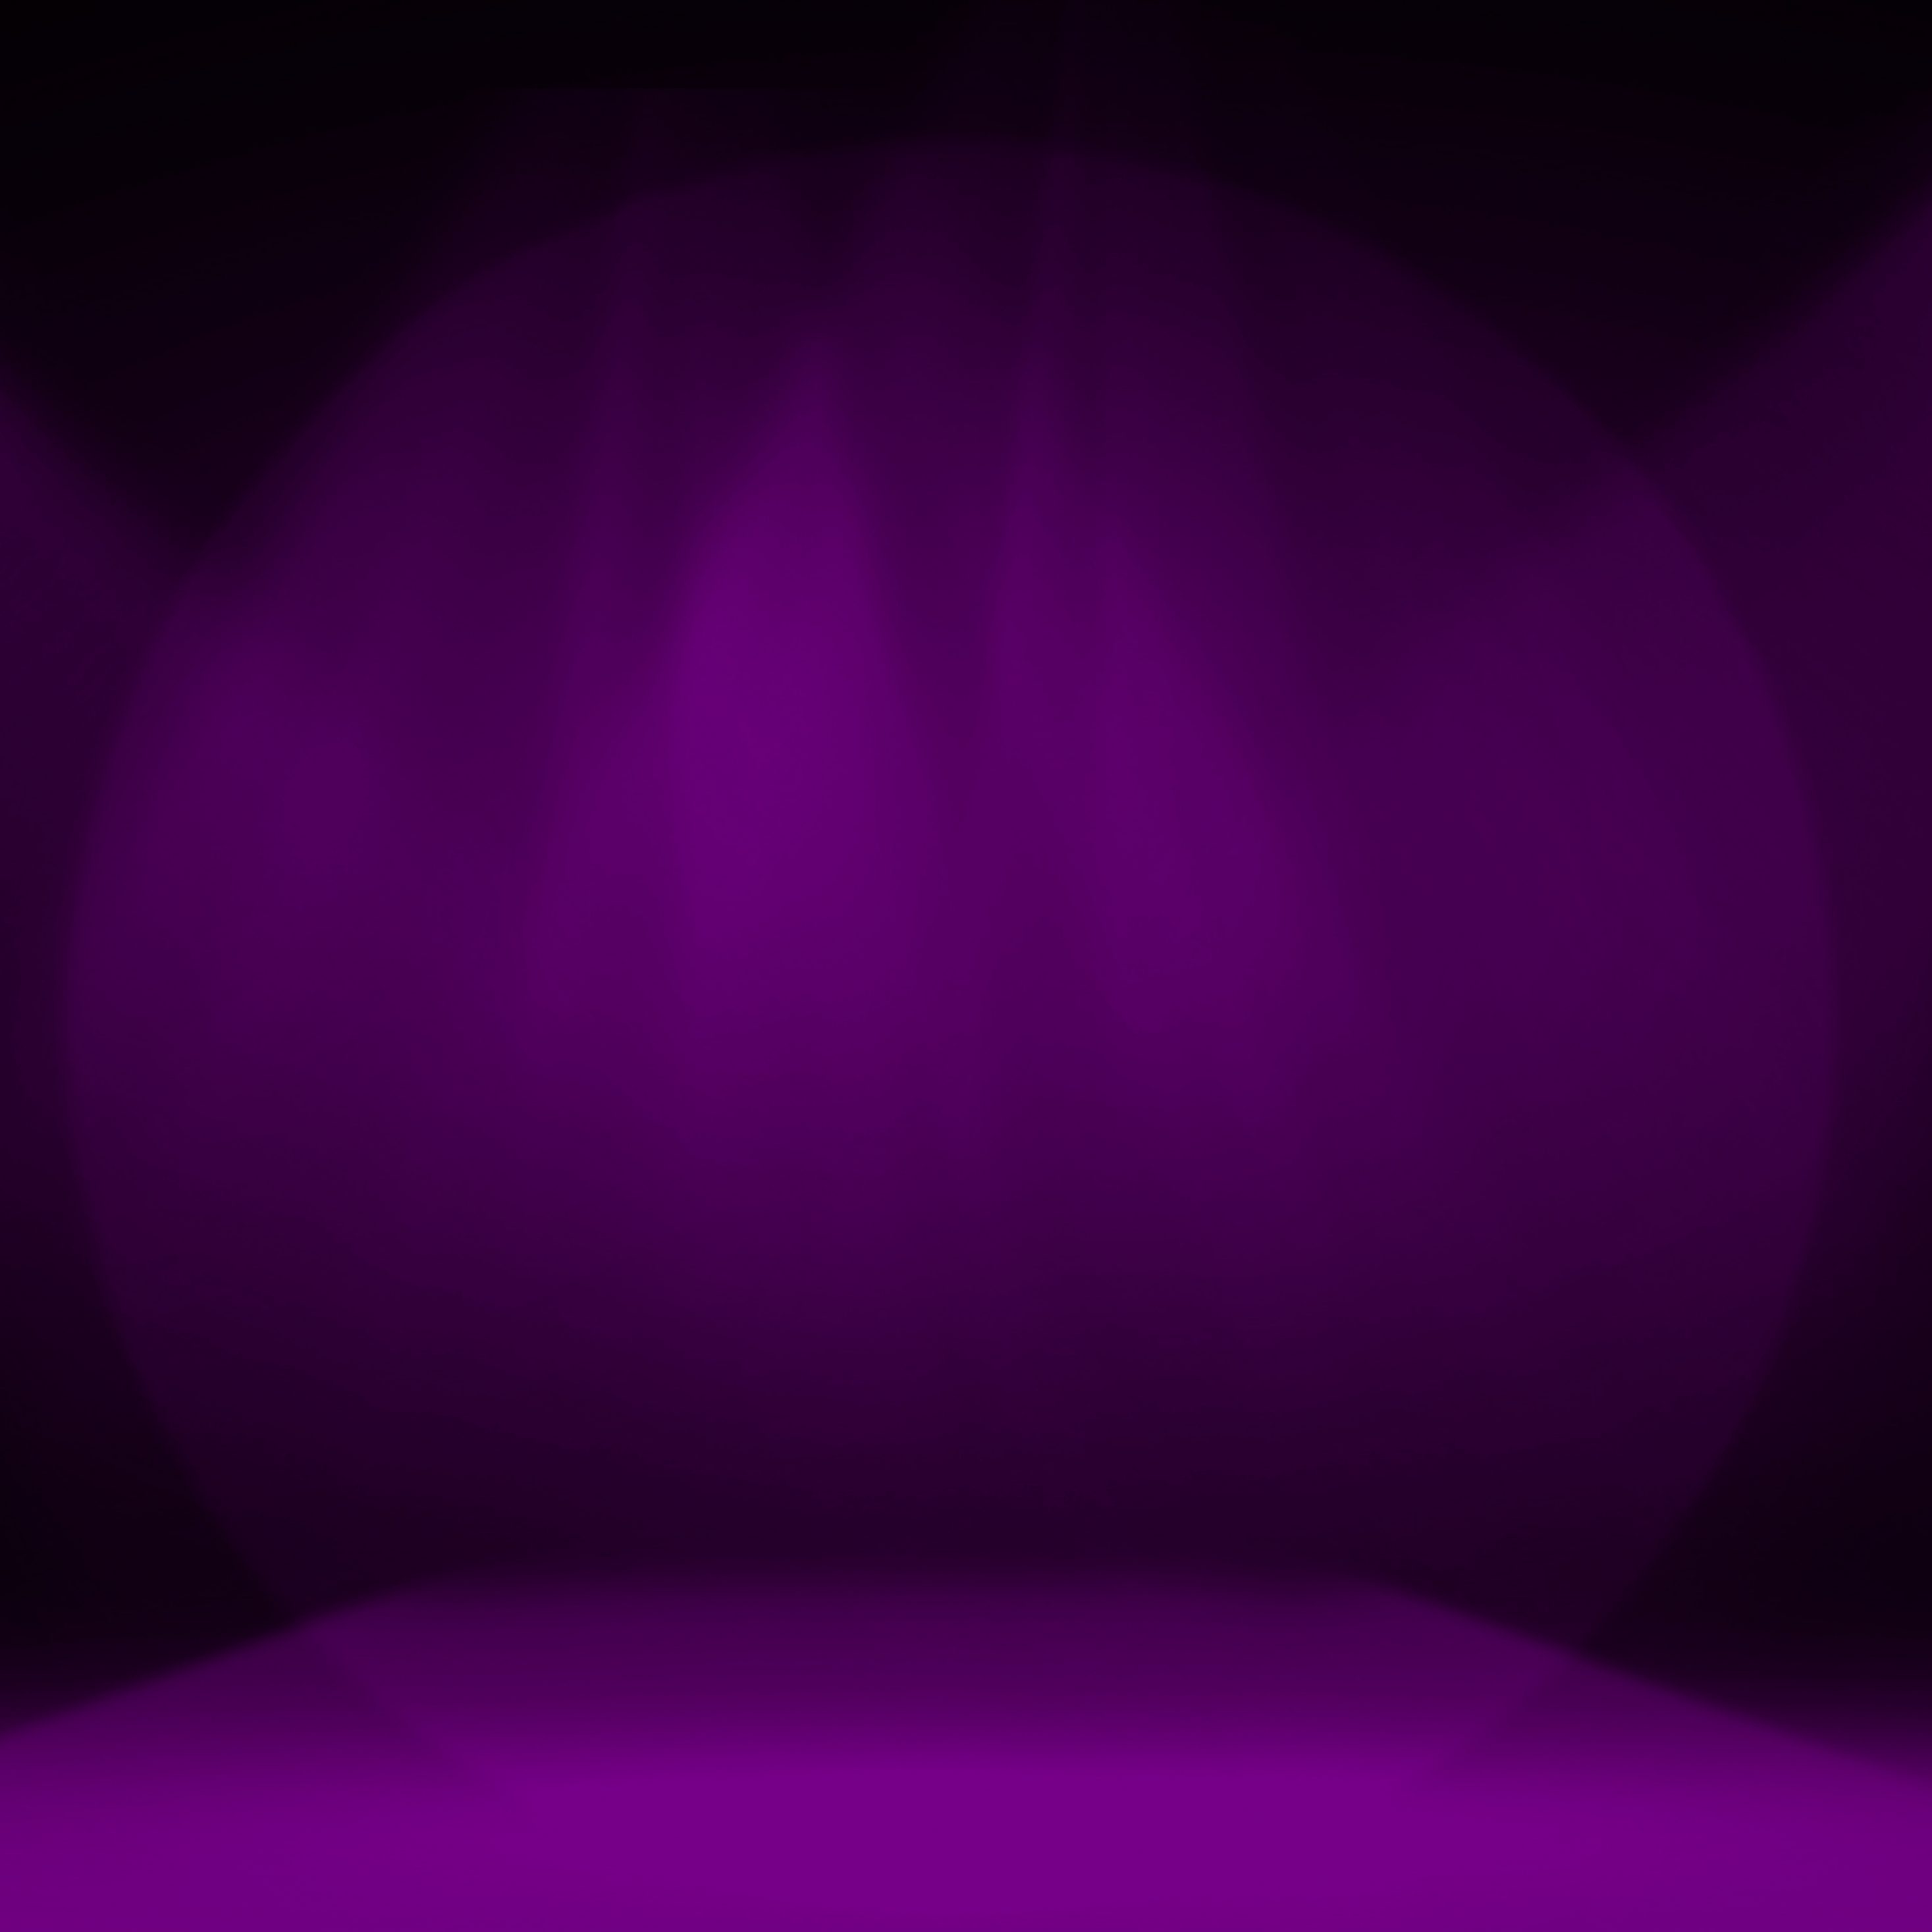 2934x2934 iOS iPad wallpaper 4k Purple Stage Decoration iPad Wallpaper 2934x2934 pixels resolution